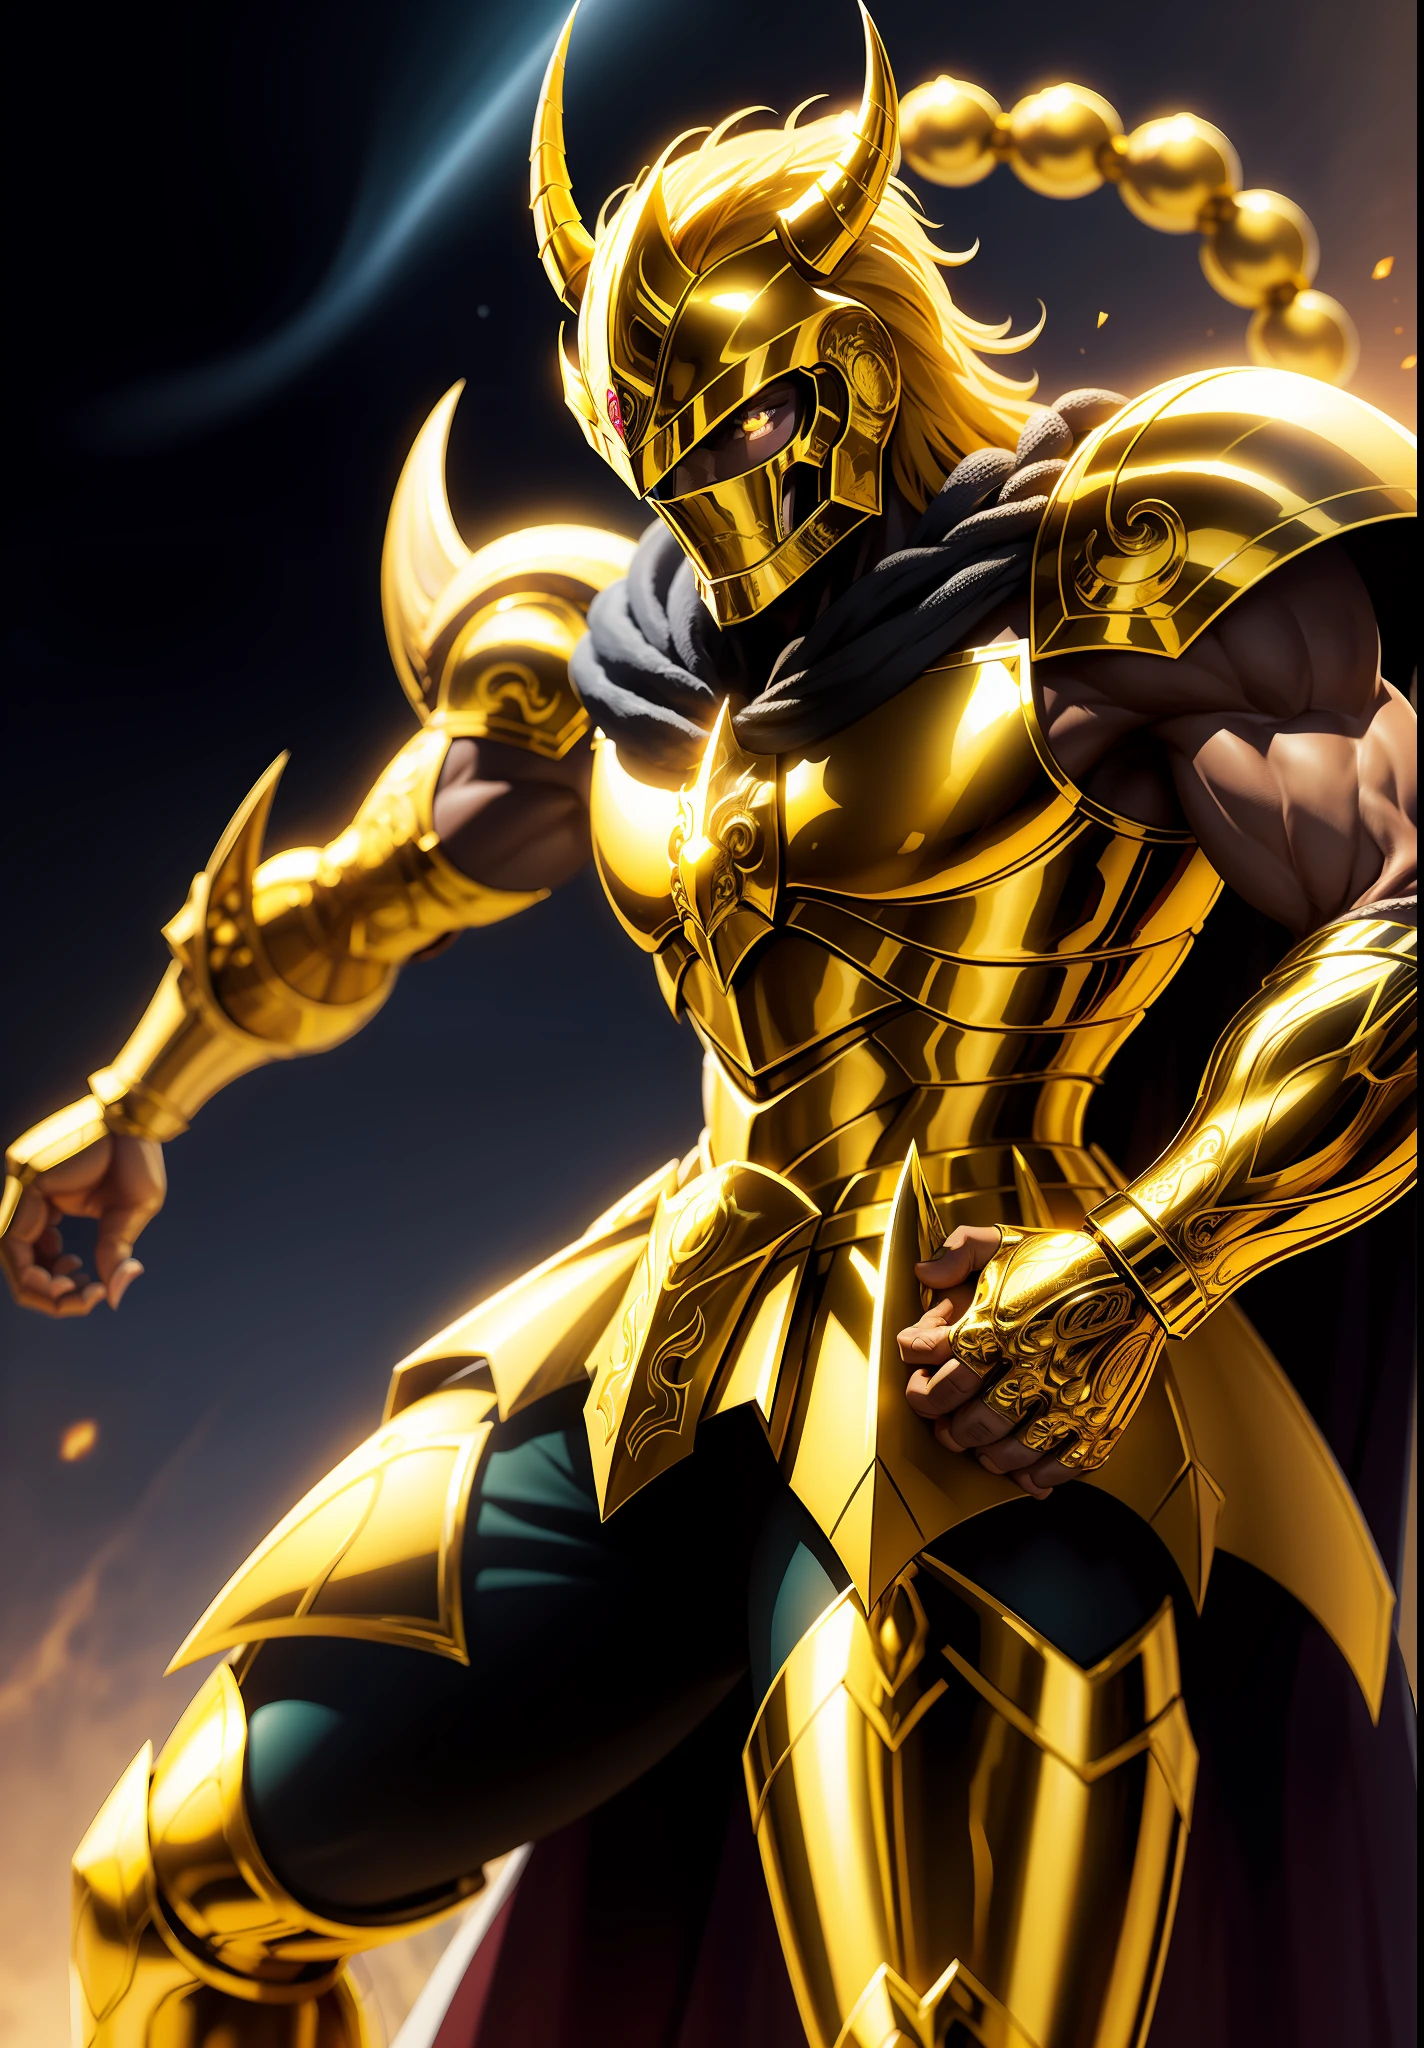 身着金色蝎子盔甲的骑士角色 , 身穿金色盔甲的骑士角色, 黄道十二宫骑士 天蝎座 , 在天空中威风凛凛的蝎子王 auroboeal 背景中, 8K高清, 复杂的细节, 令人惊叹的品质